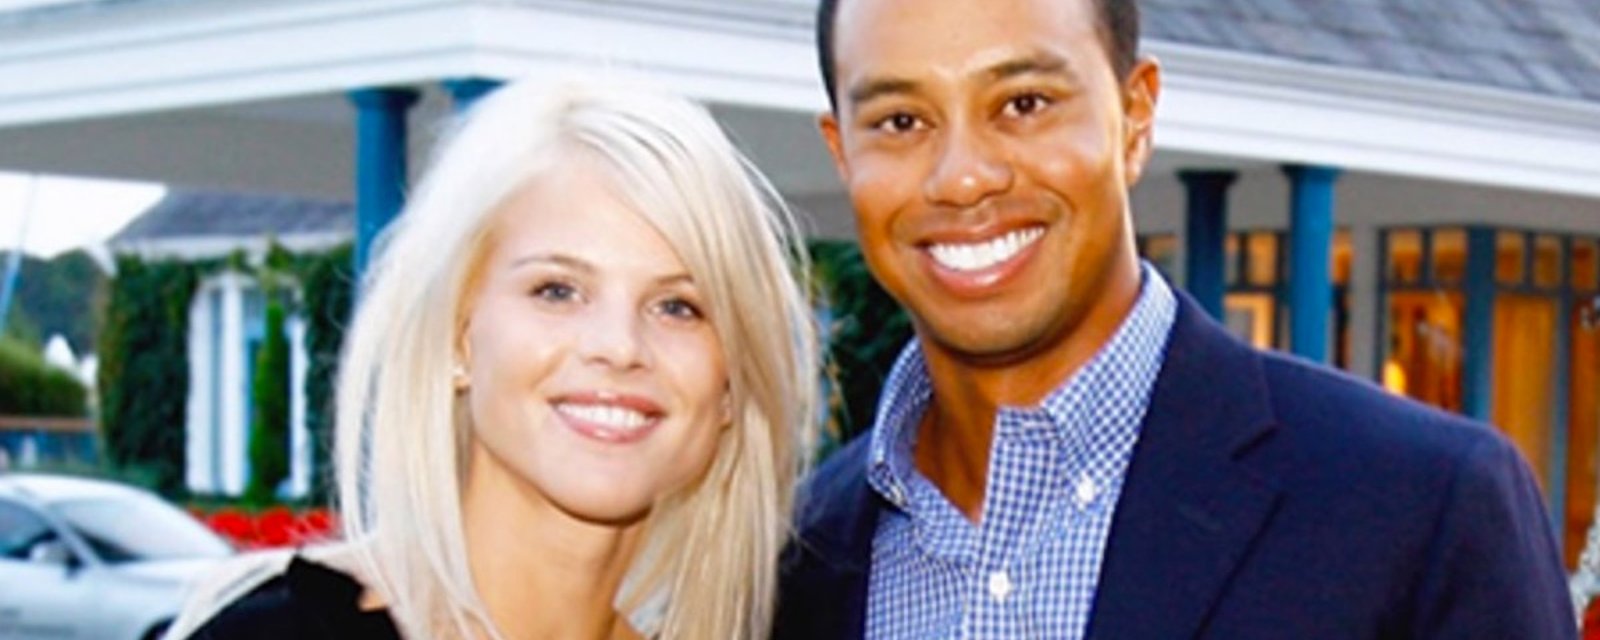 Ce à quoi ressemble l'ex-femme de Tiger Woods aujourd'hui nous laisse sans mots! 